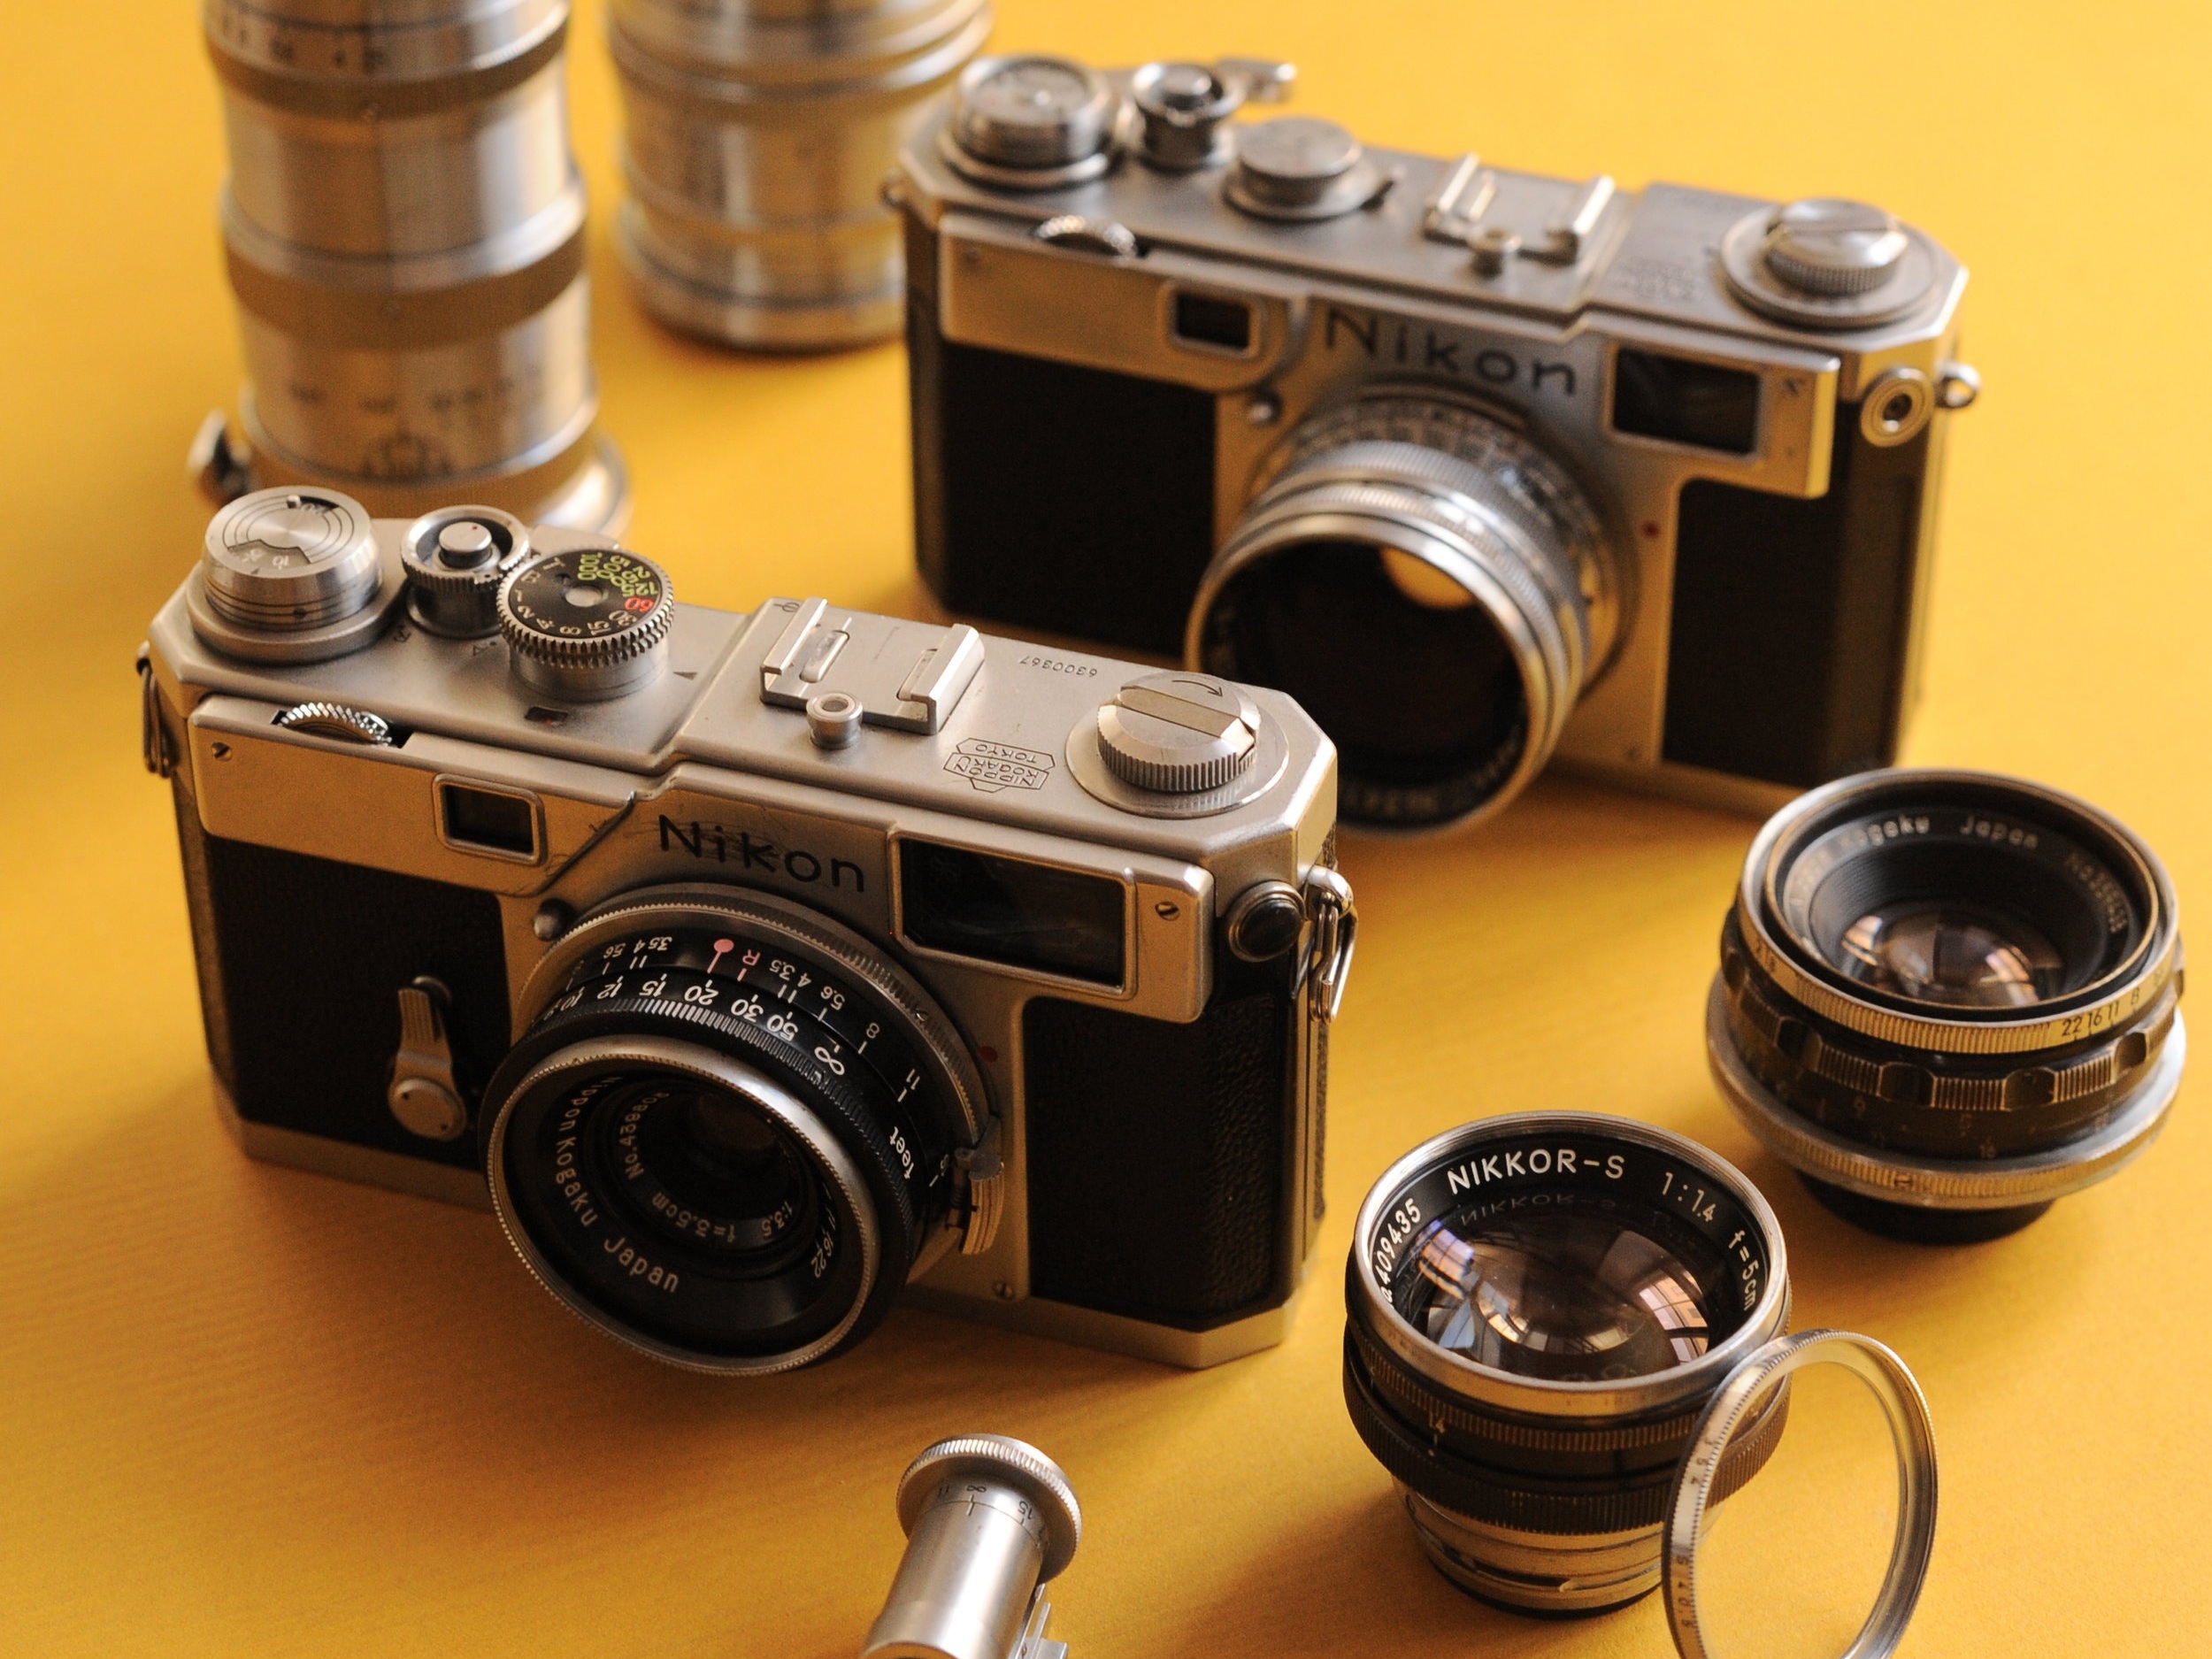 Nikon Rangefinder Film Cameras (1948 - 2005) — cameraville